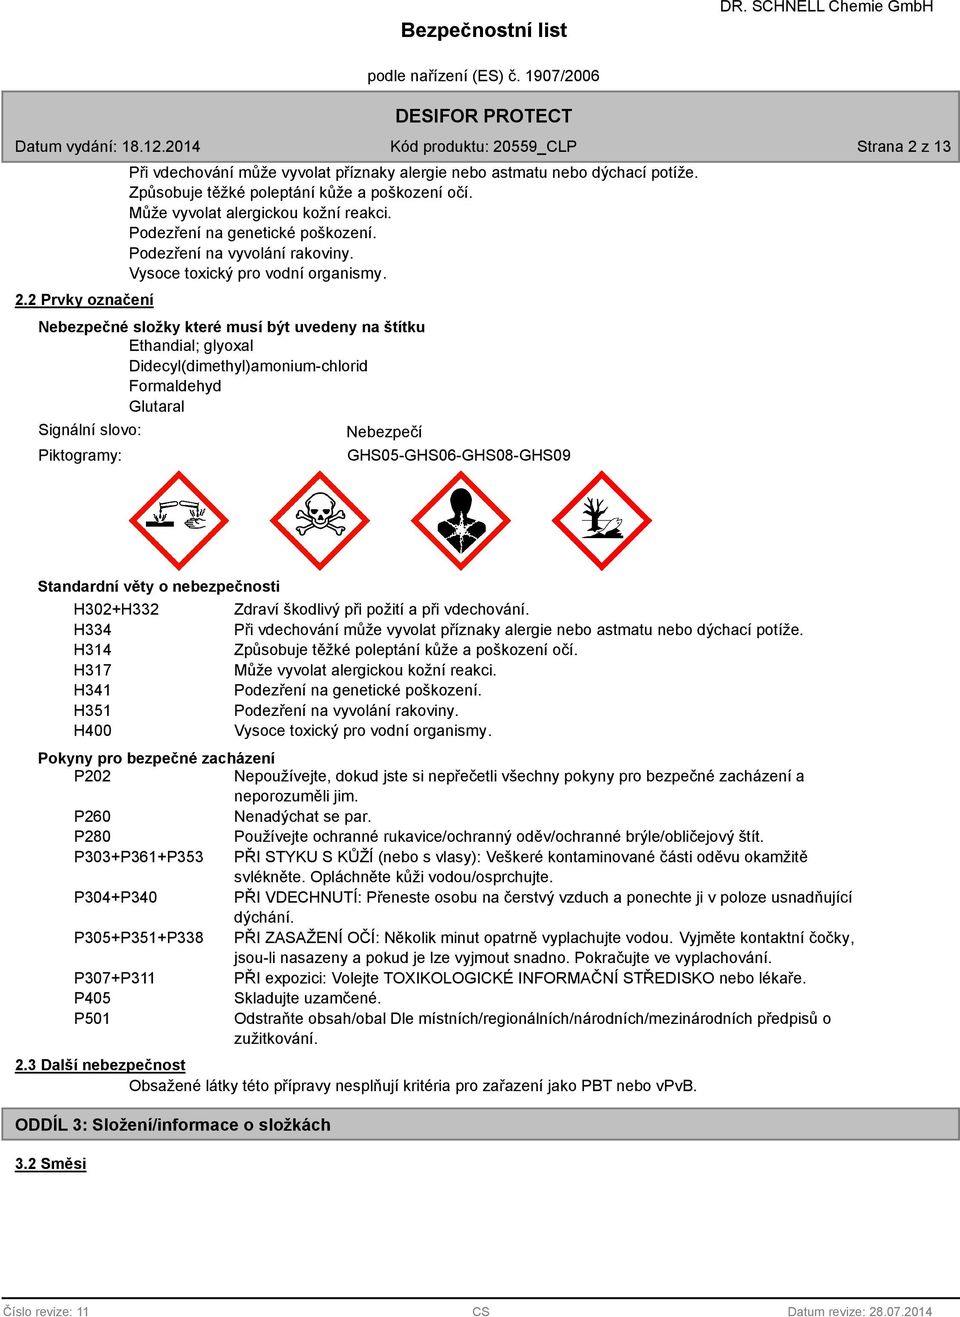 Nebezpečné složky které musí být uvedeny na štítku Ethandial; glyoxal Didecyl(dimethyl)amonium-chlorid Formaldehyd Glutaral Signální slovo: Piktogramy: Nebezpečí GHS05-GHS06-GHS08-GHS09 Standardní